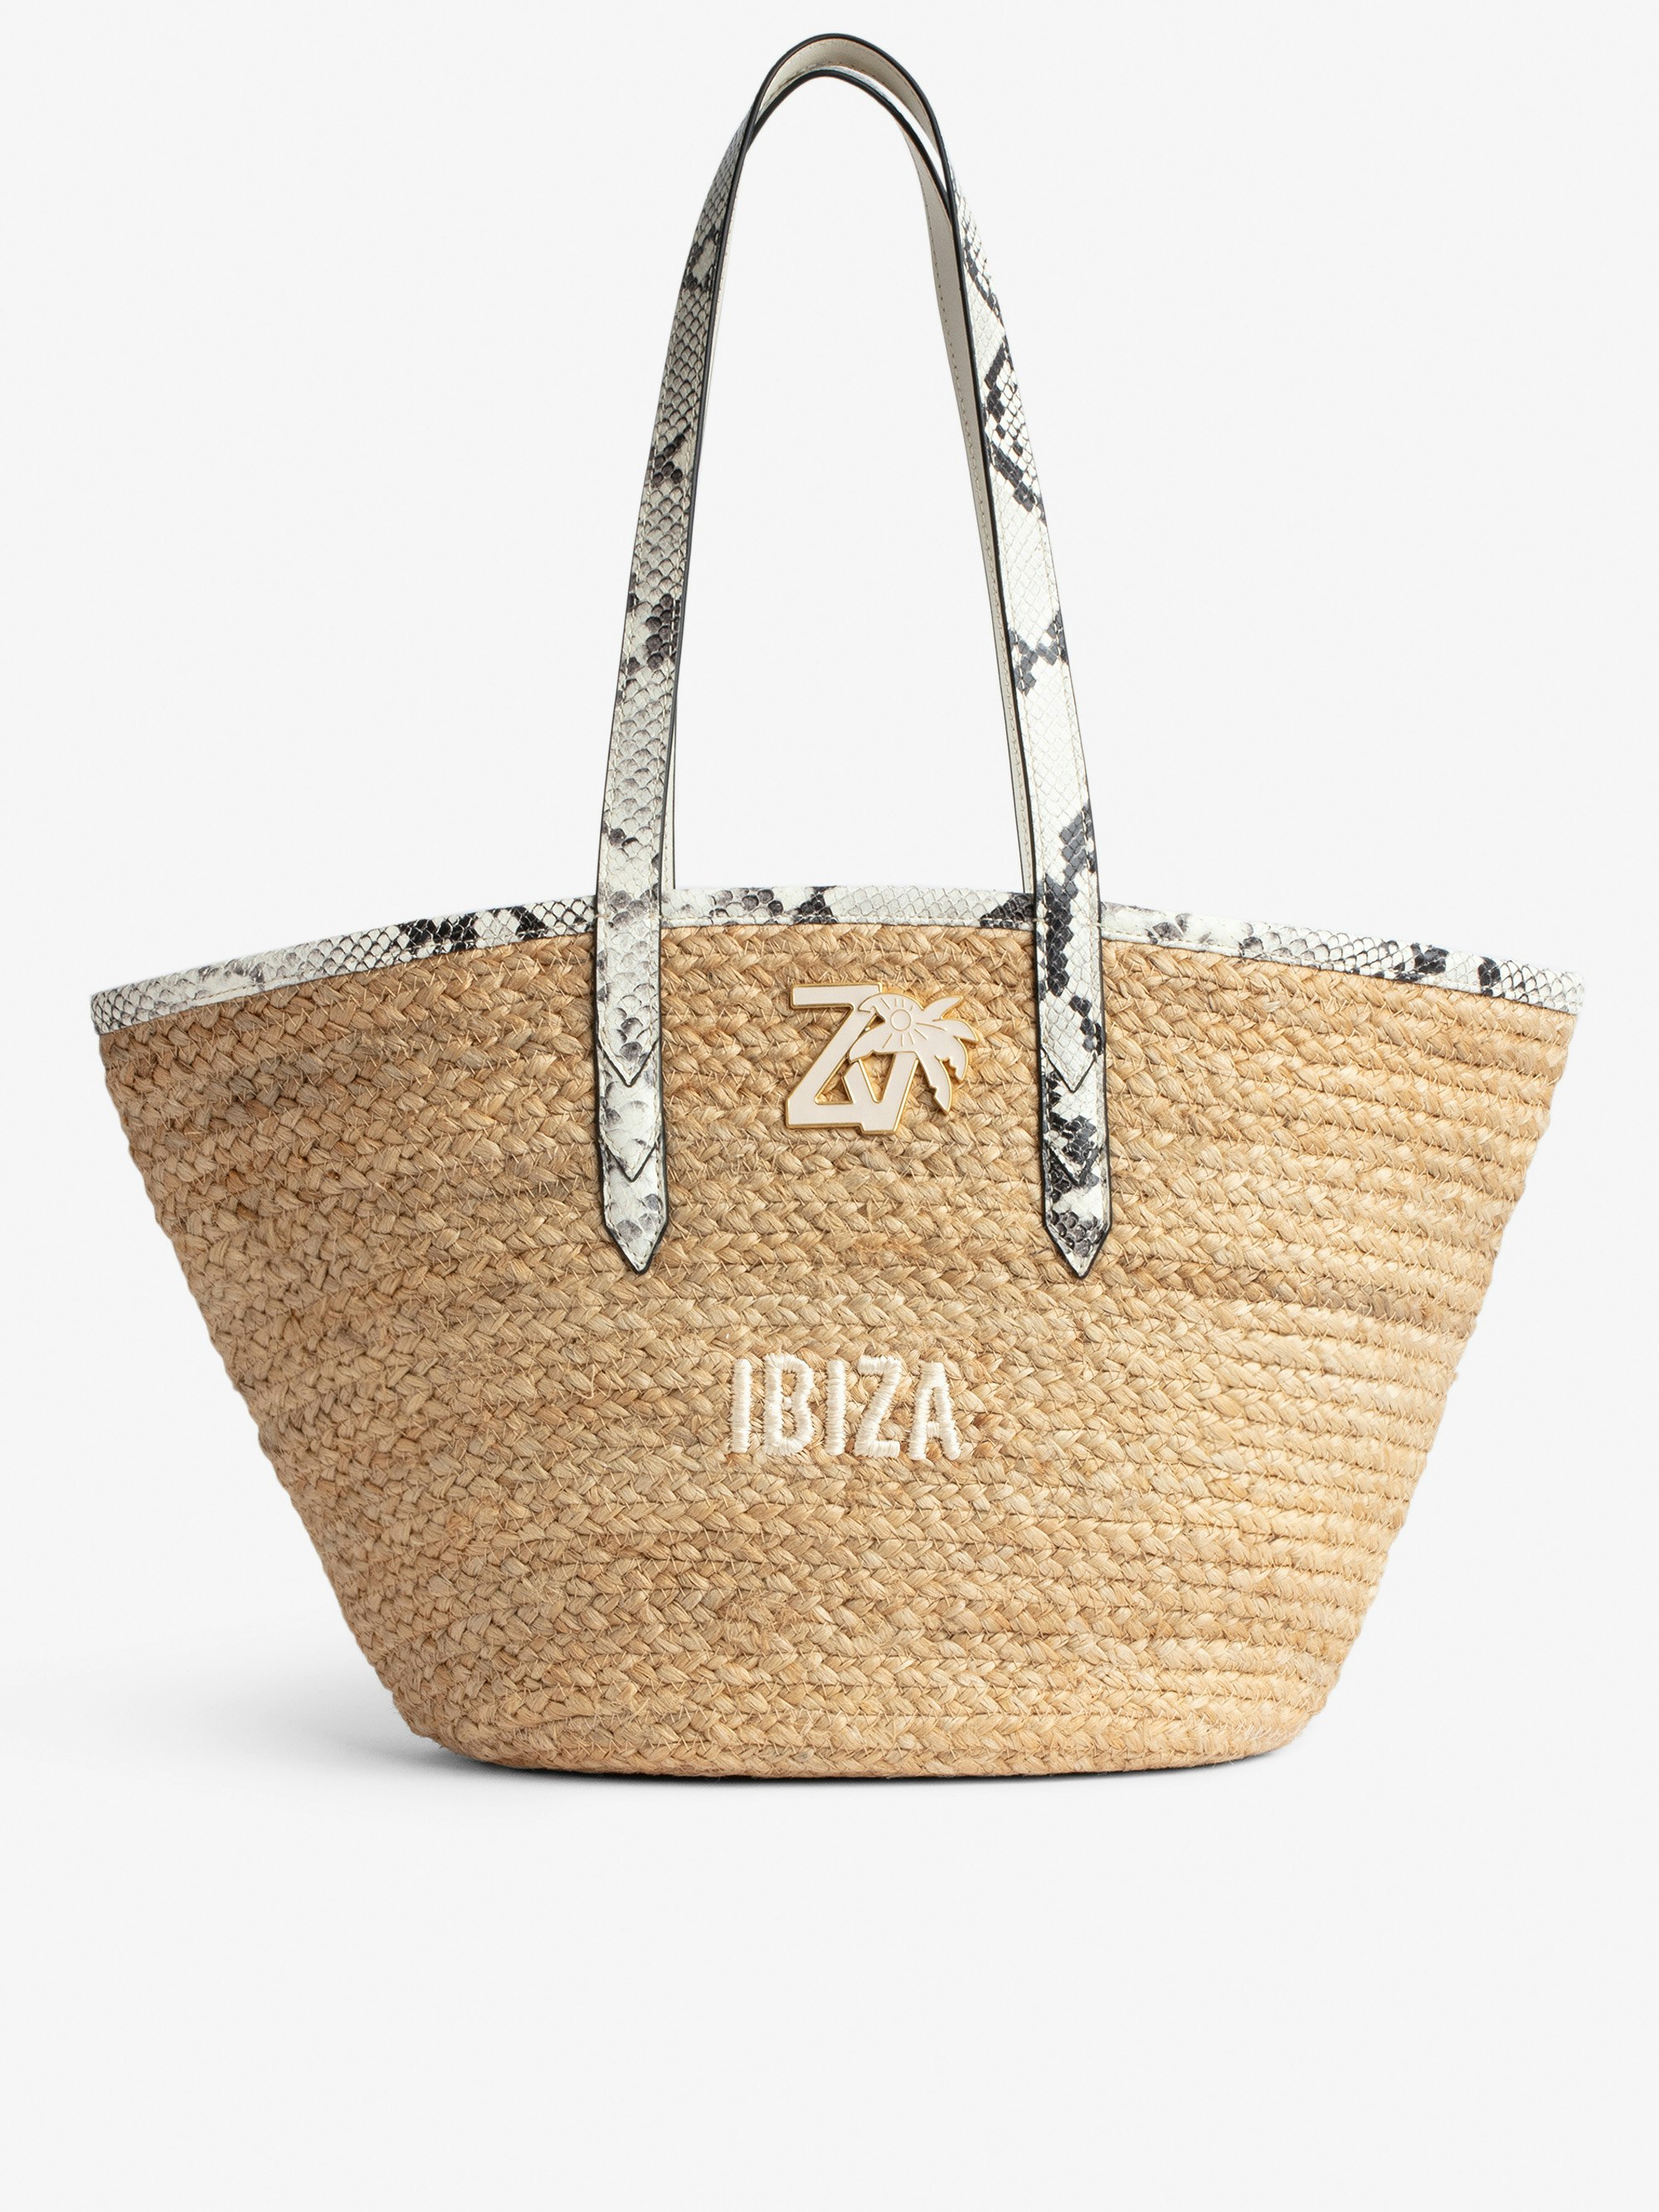 Borsa Le Beach Bag - Borsa in paglia con manici in pelle ecru effetto pitone, con ricamo "Ibiza" e impreziosita da un charm ZV - Donna